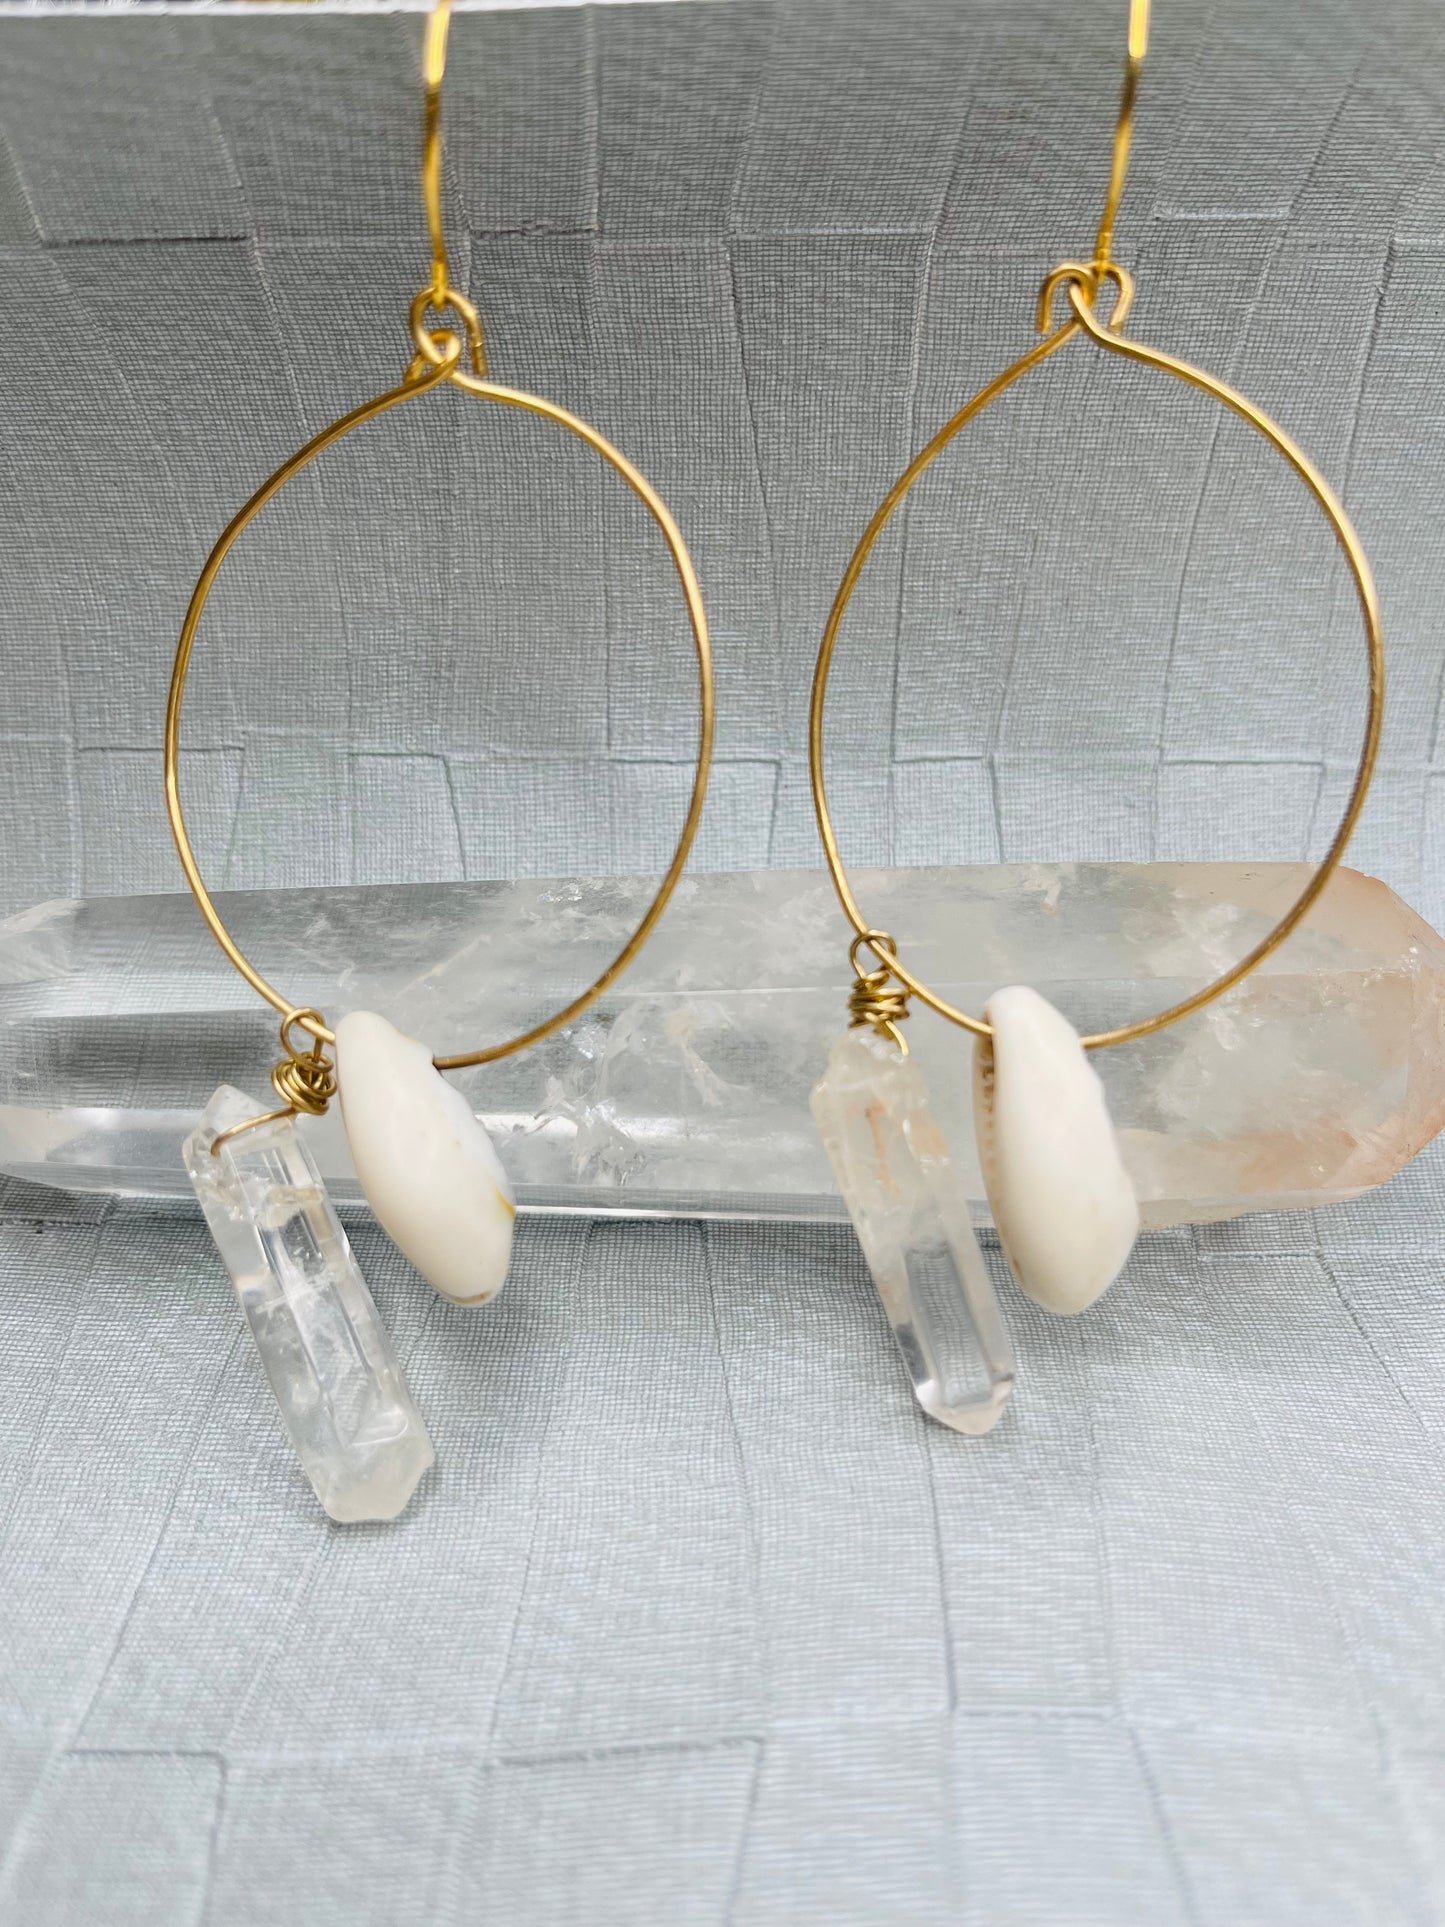 Abundance Energy Medium Oval Hoops Soul Chains Earrings - Clear Quartz Crystals